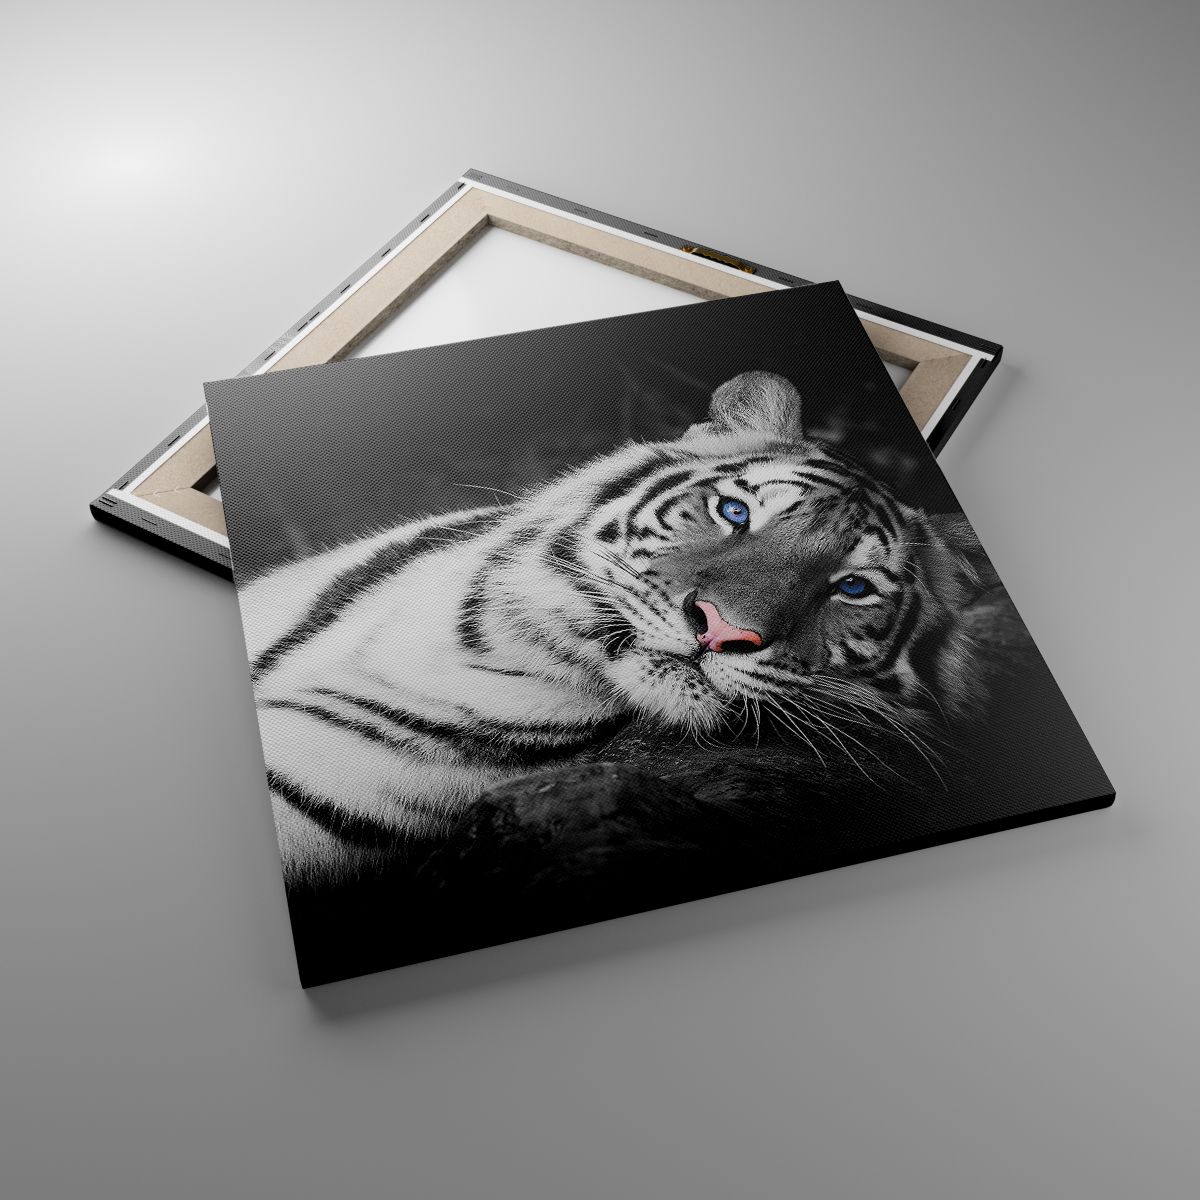 Obrazy Tygrys Biały, Obrazy Tygrys, Obrazy Zwierzęta, Obrazy Natura, Obrazy Czarno-Biały